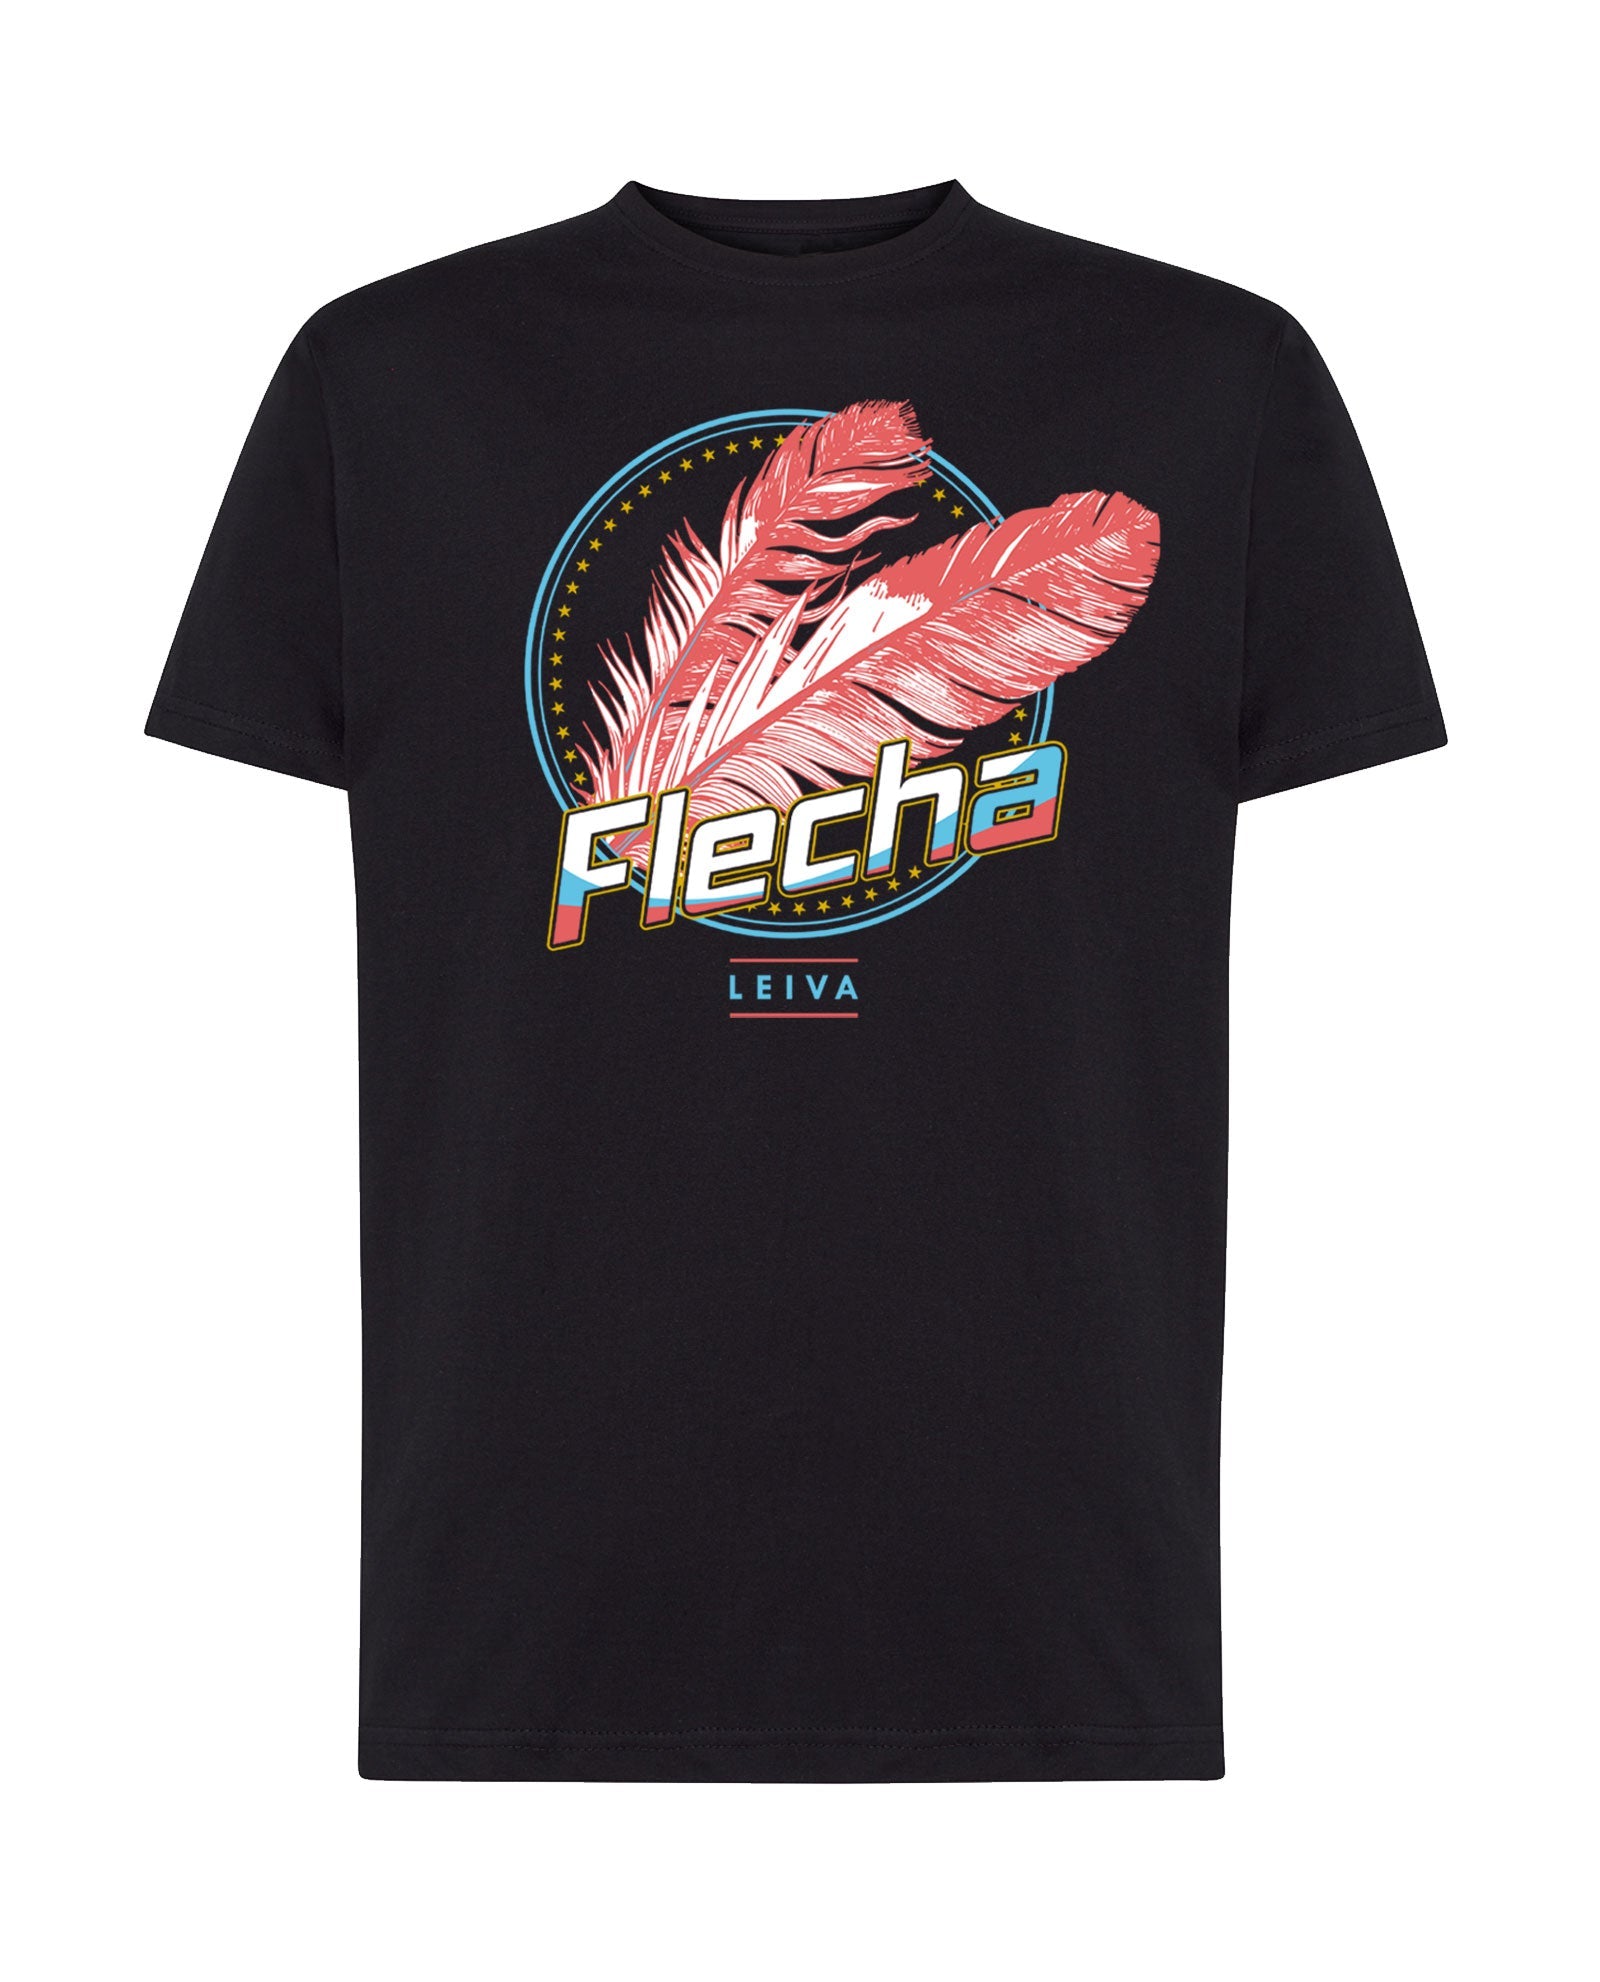 Rocktud - Camiseta Exclusiva Flecha Leiva - D2fy - Rocktud Brand